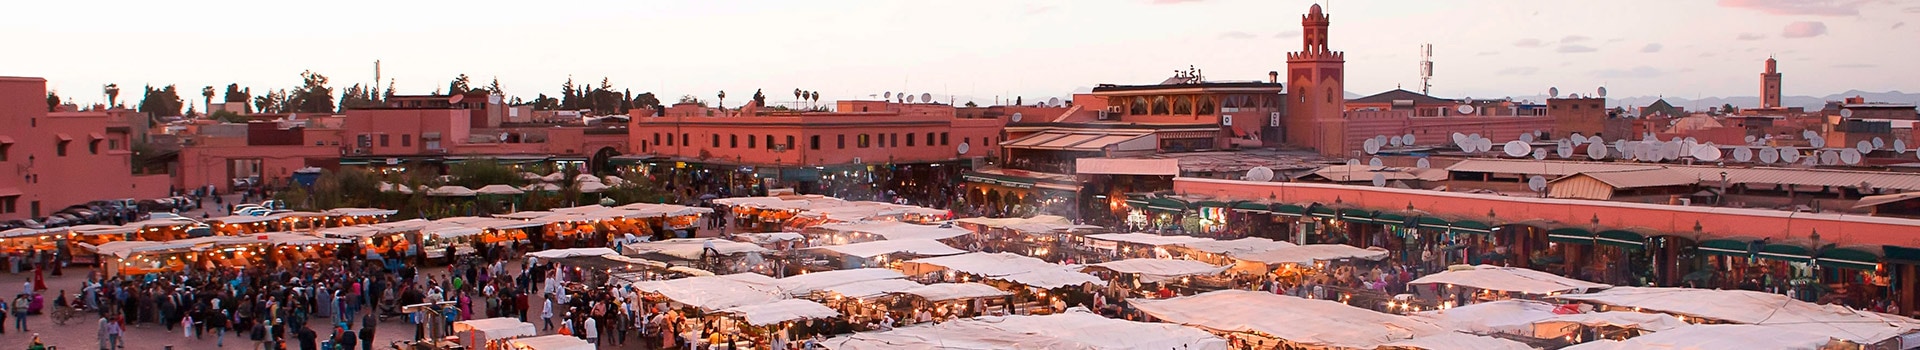 Nizza - Marrakech